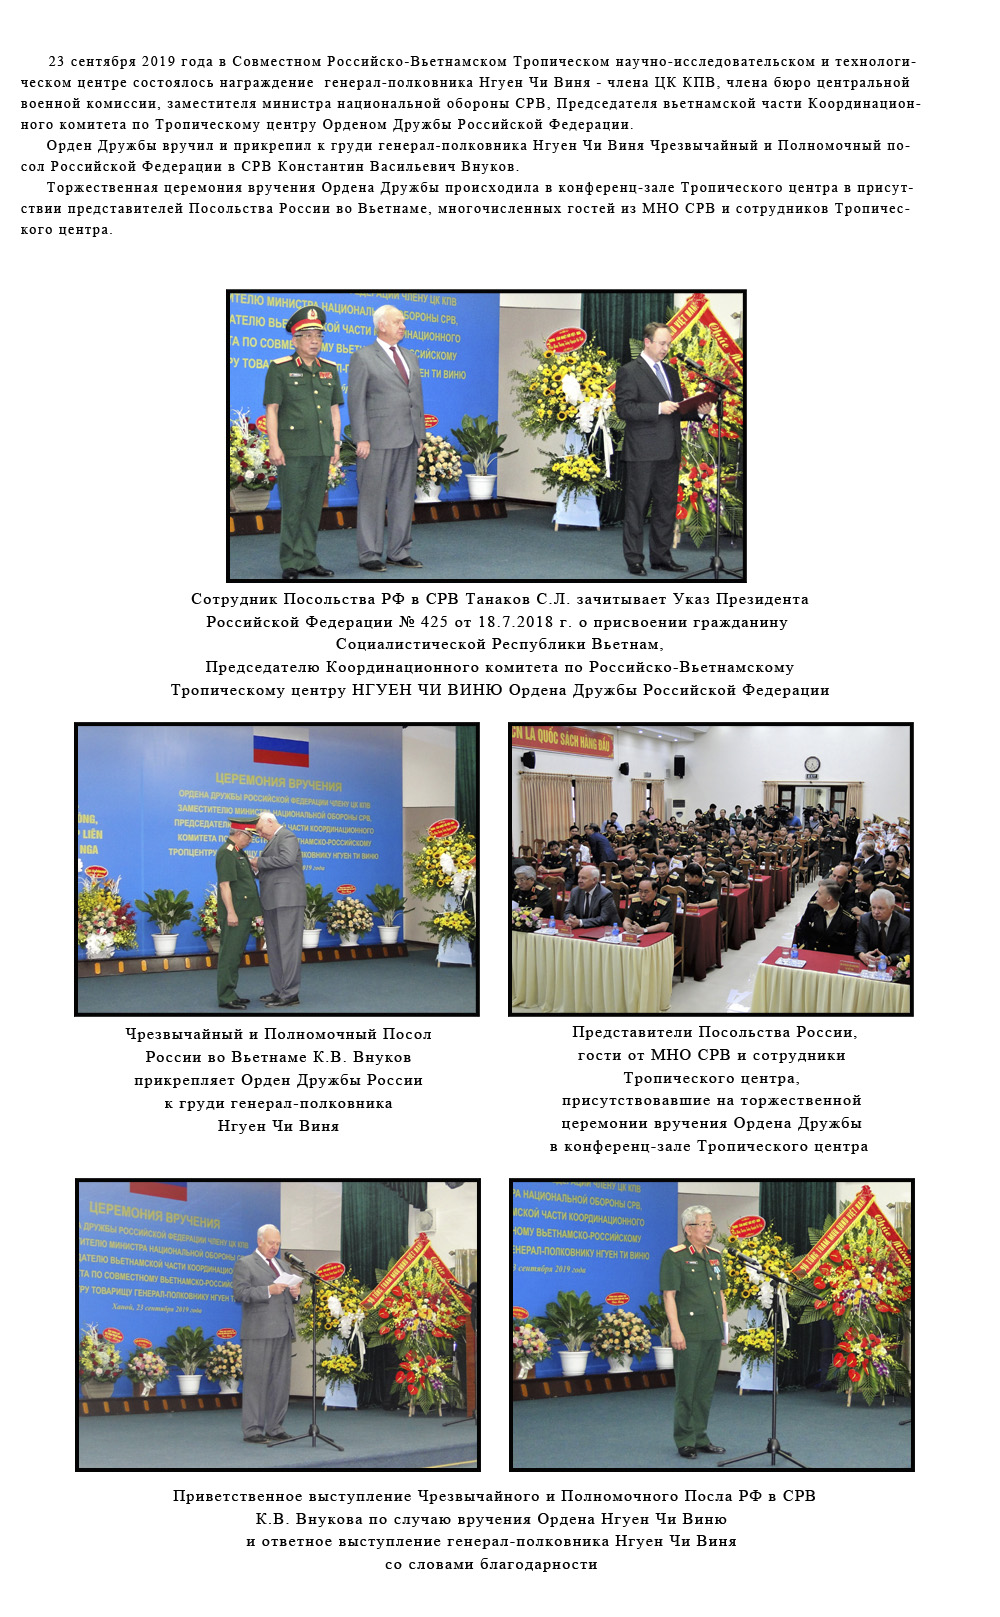 Вручение Ордена Дружбы Российской Федерации заместителю министра национальной обороны СРВ  генерал-полковнику Нгуен Чи Виню